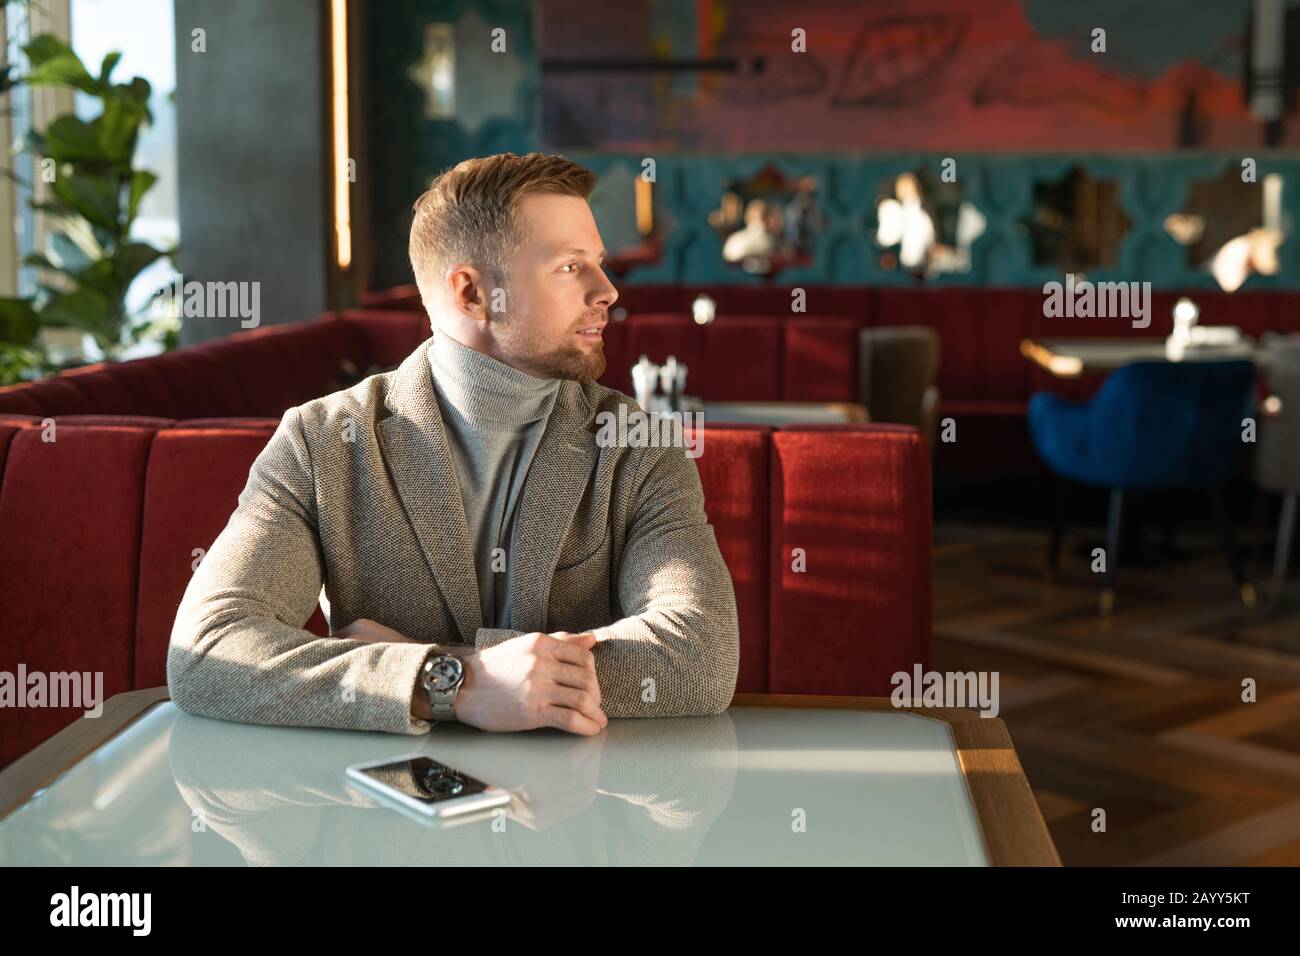 Horizontales Porträt eines jungen erwachsenen kaukasischen Mannes, der allein am Café-Tisch sitzt und auf jemanden wartet Stockfoto